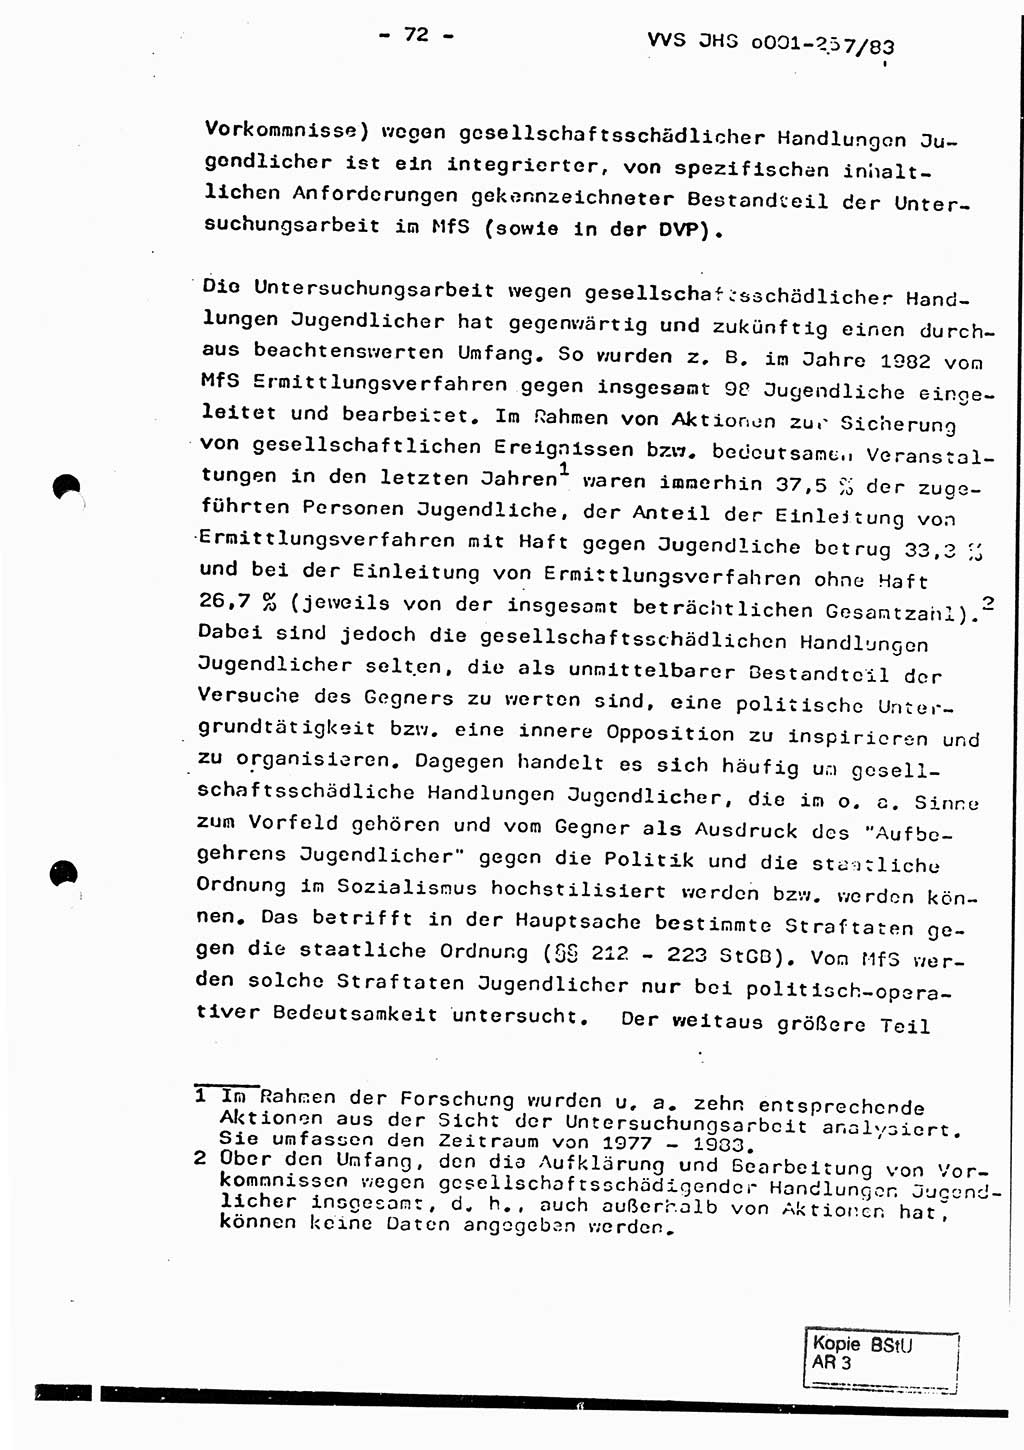 Dissertation, Oberst Helmut Lubas (BV Mdg.), Oberstleutnant Manfred Eschberger (HA IX), Oberleutnant Hans-Jürgen Ludwig (JHS), Ministerium für Staatssicherheit (MfS) [Deutsche Demokratische Republik (DDR)], Juristische Hochschule (JHS), Vertrauliche Verschlußsache (VVS) o001-257/83, Potsdam 1983, Seite 72 (Diss. MfS DDR JHS VVS o001-257/83 1983, S. 72)